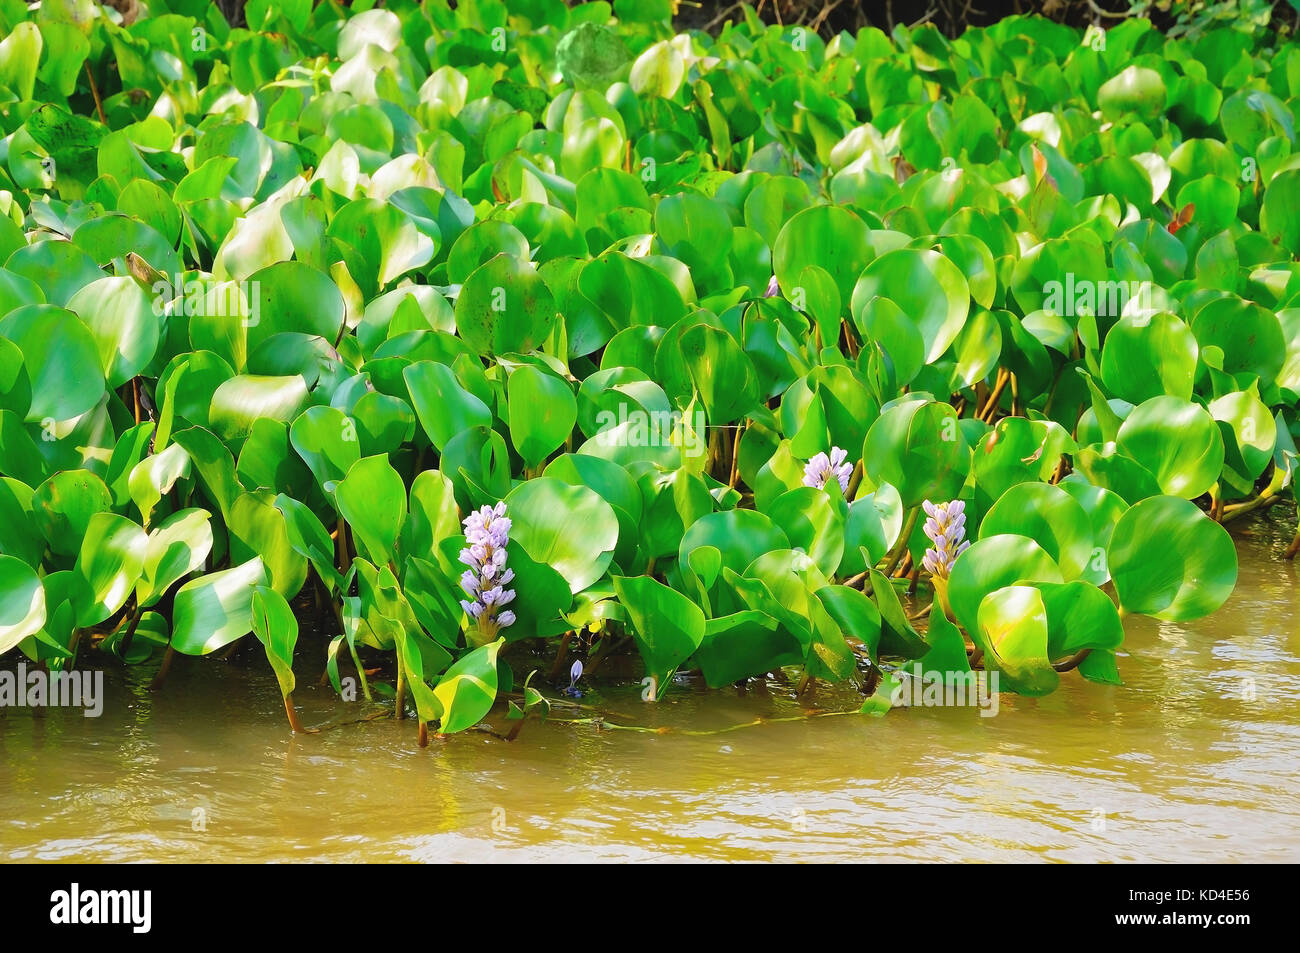 Verde pianta acquatica galleggiante sopra acqua di fiume sul margine. Pianta conosciuta come Aguape. Foto scattata nel Pantanal, Brasile. Foto Stock